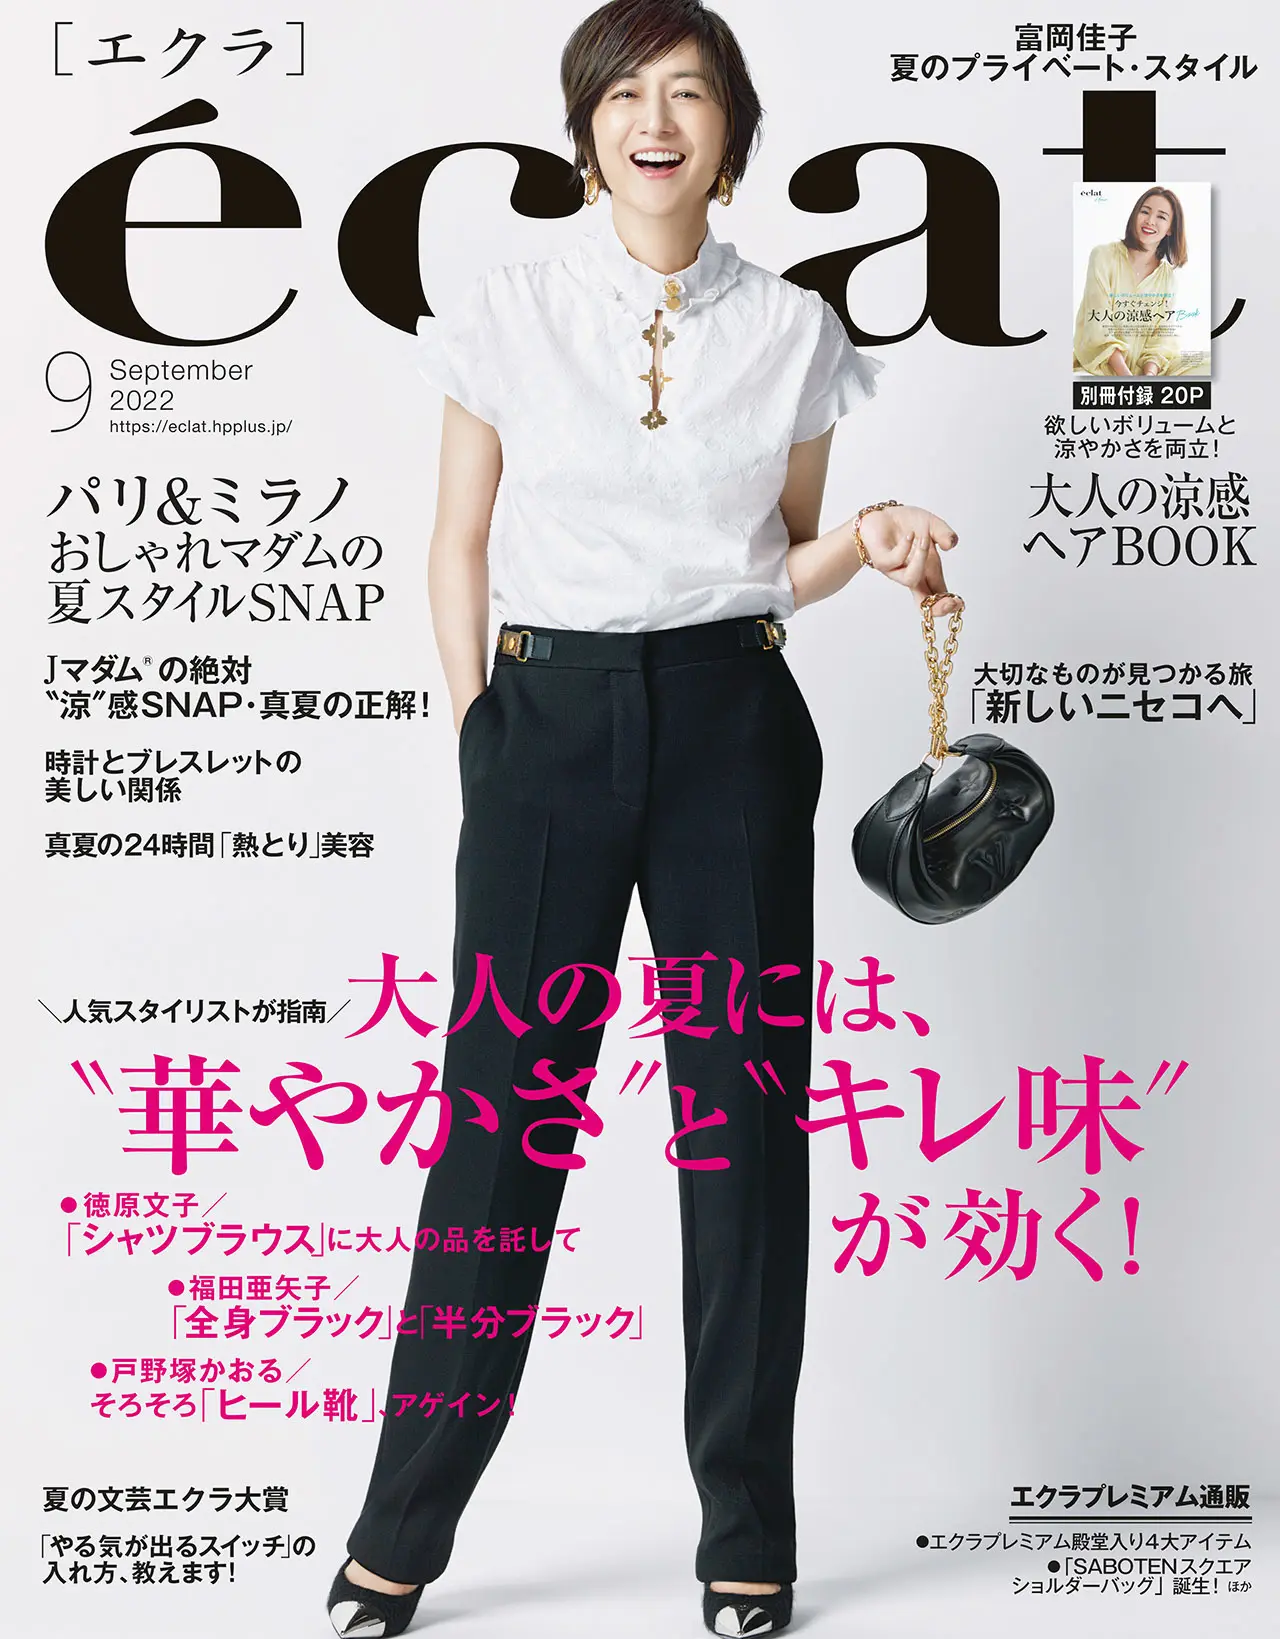 エクラ9月号表紙。カバーモデルは富岡佳子さん。